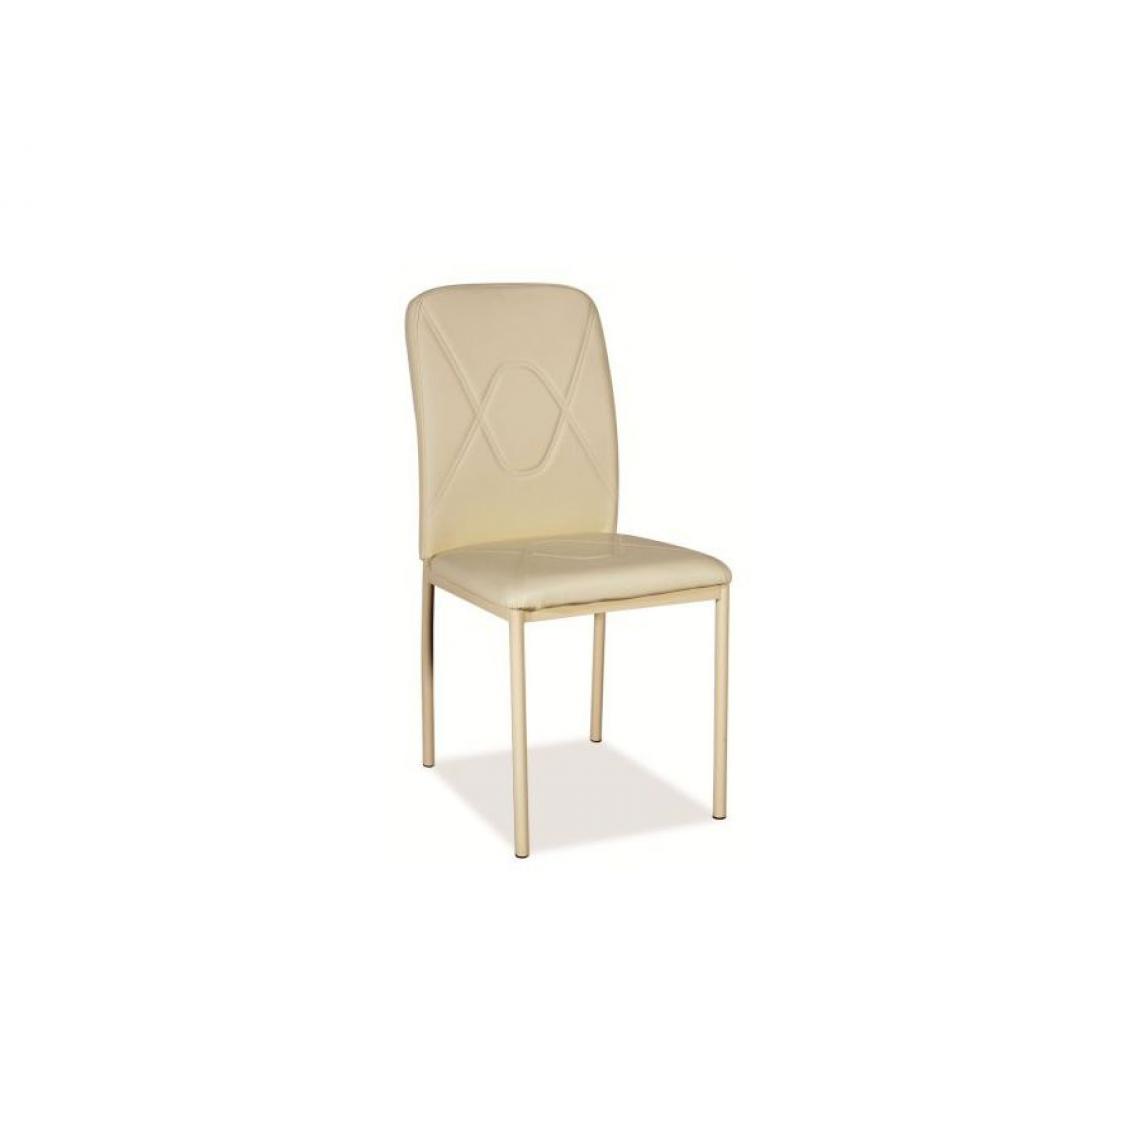 Hucoco - LEWIS | Jolie chaise pour salon moderne | Dimensions 90x42x41 cm | Rembourrage en cuir écologique | Chaise salle à manger - Crème - Chaises